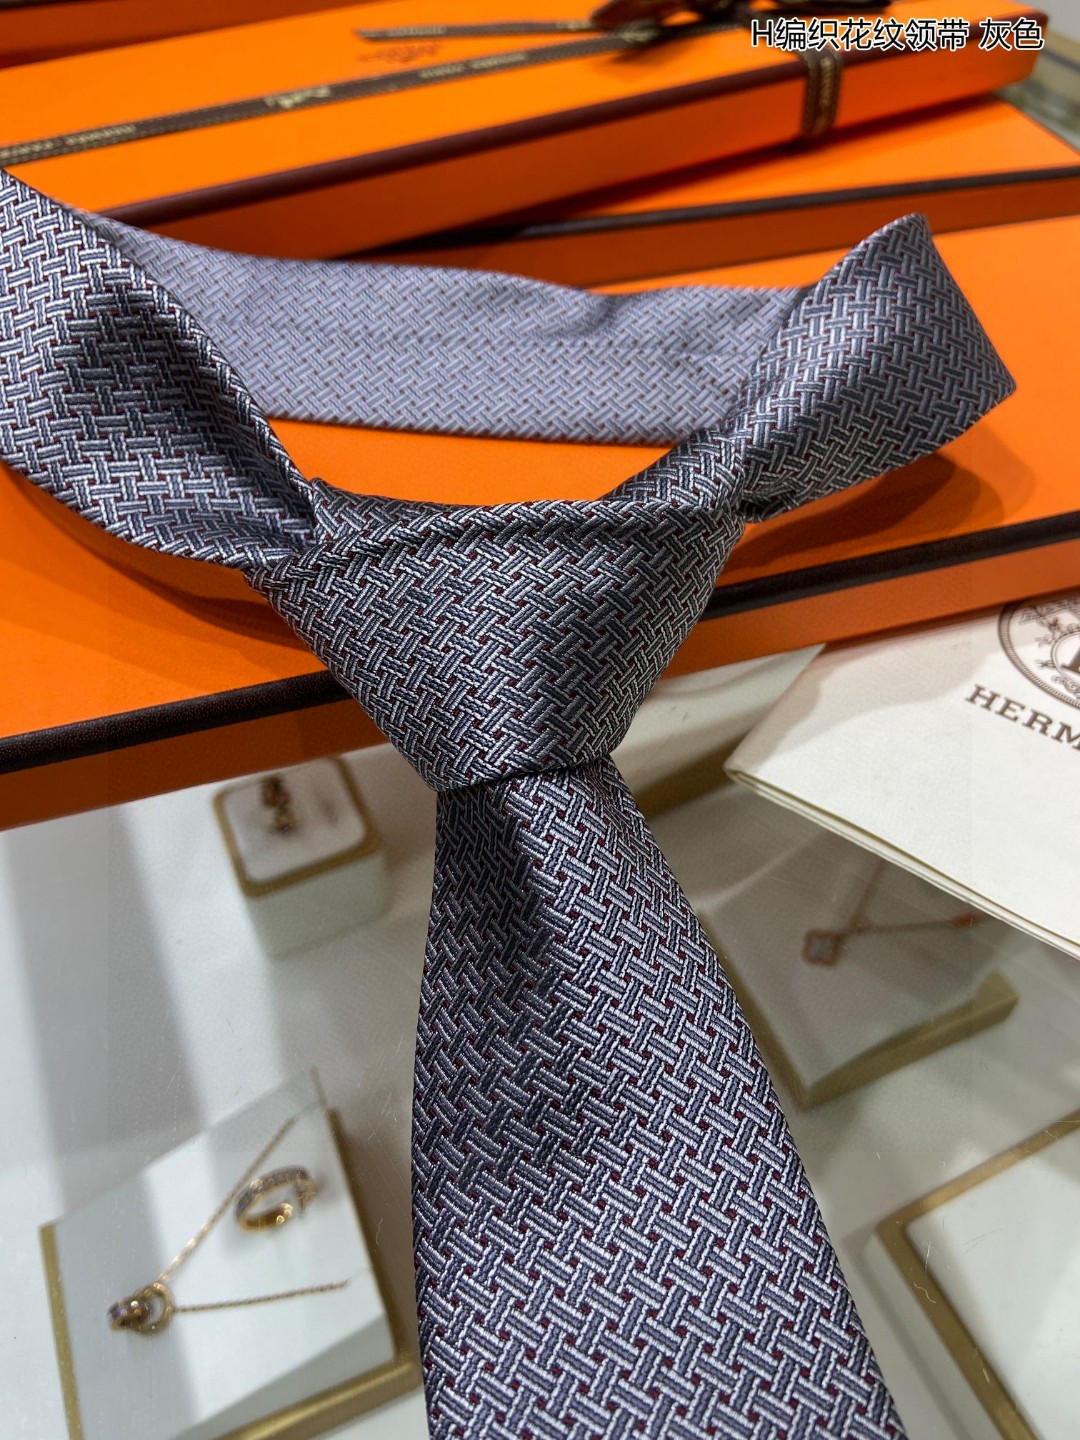 特价男士新款领带系列H编织花纹领带稀有H家每年都有一千条不同印花的领带面世从最初的多以几何图案表现骑术活